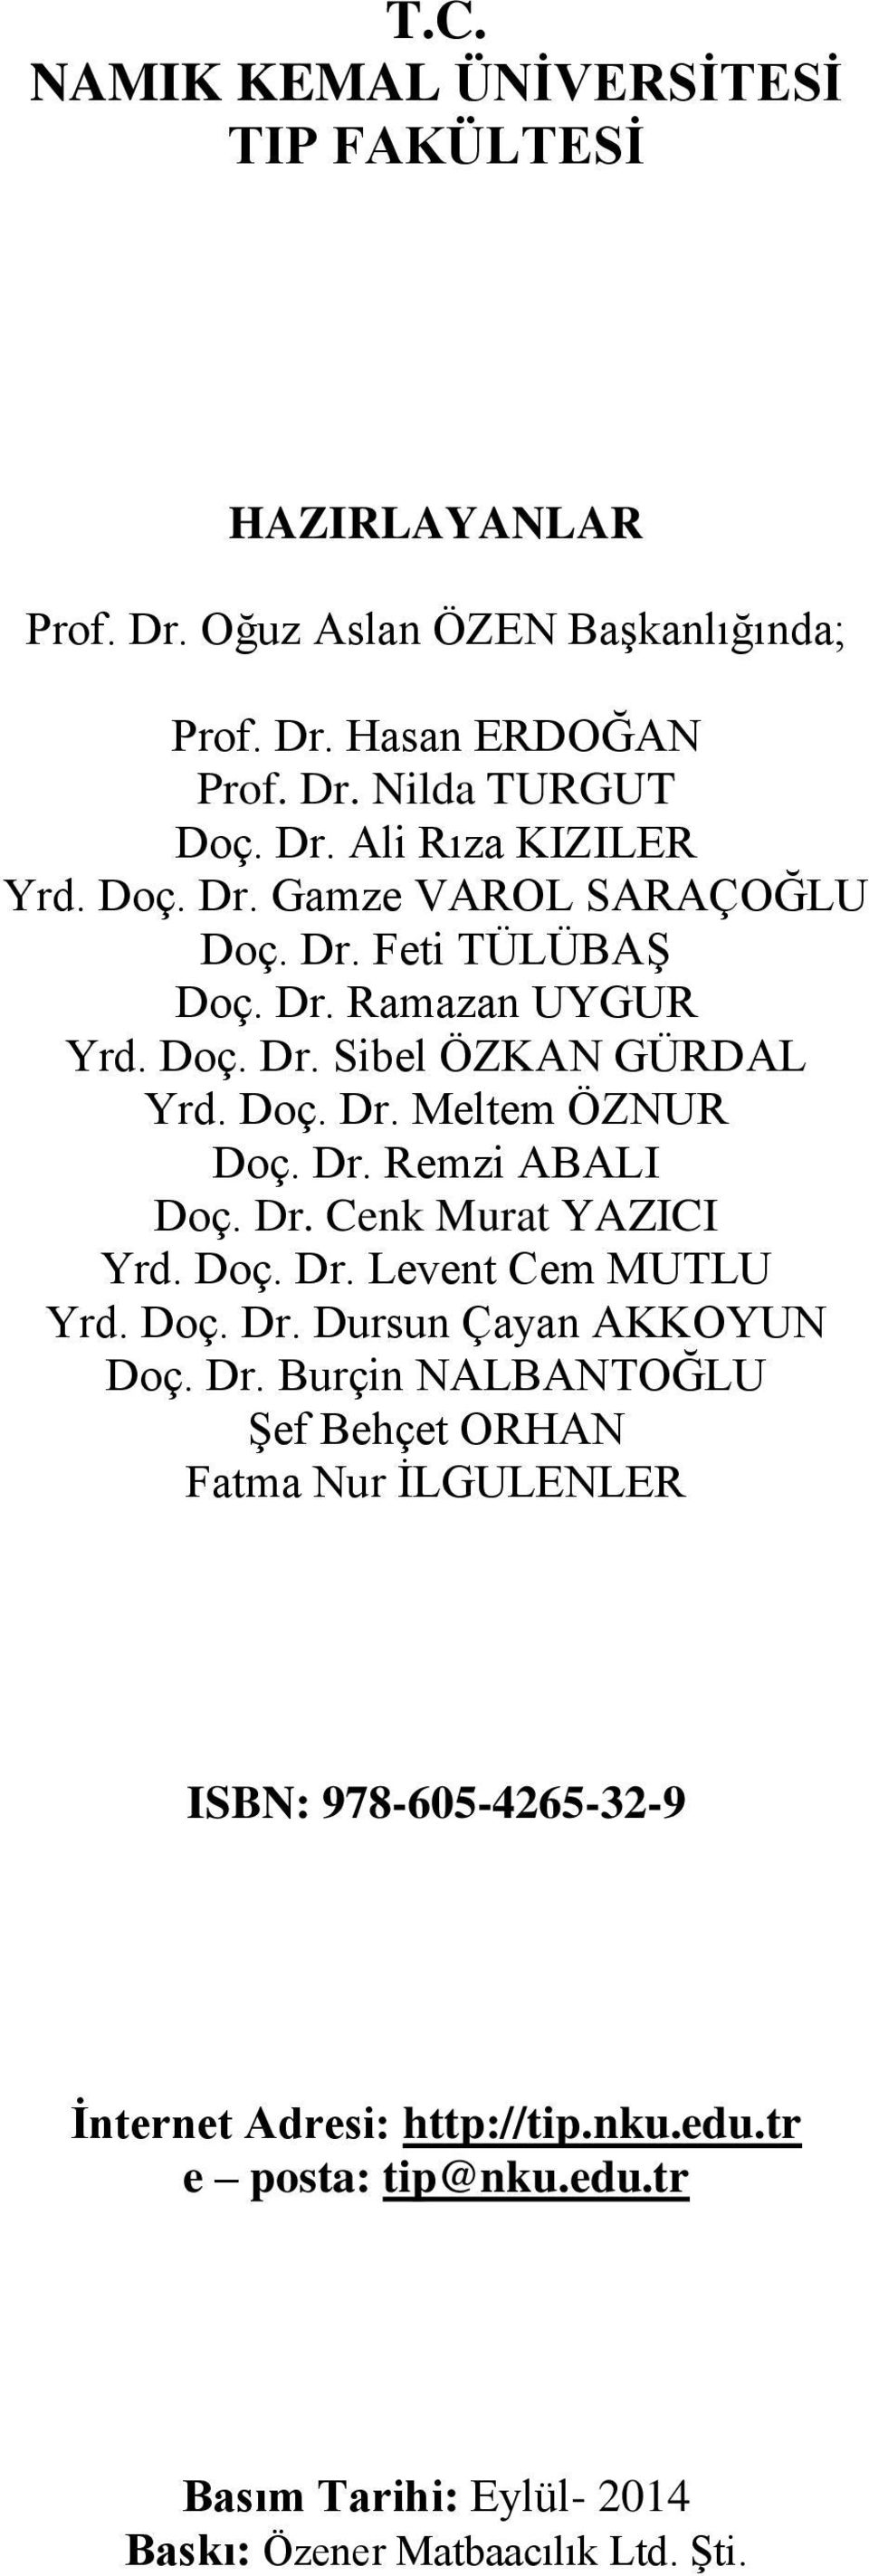 Dr. Cenk Murat YAZICI Yrd. Doç. Dr. Levent Cem MUTLU Yrd. Doç. Dr. Dursun Çayan AKKOYUN Doç. Dr. Burçin NALBANTOĞLU Şef Behçet ORHAN Fatma Nur İLGULENLER ISBN: 978-605-4265-32-9 İnternet Adresi: http://tip.